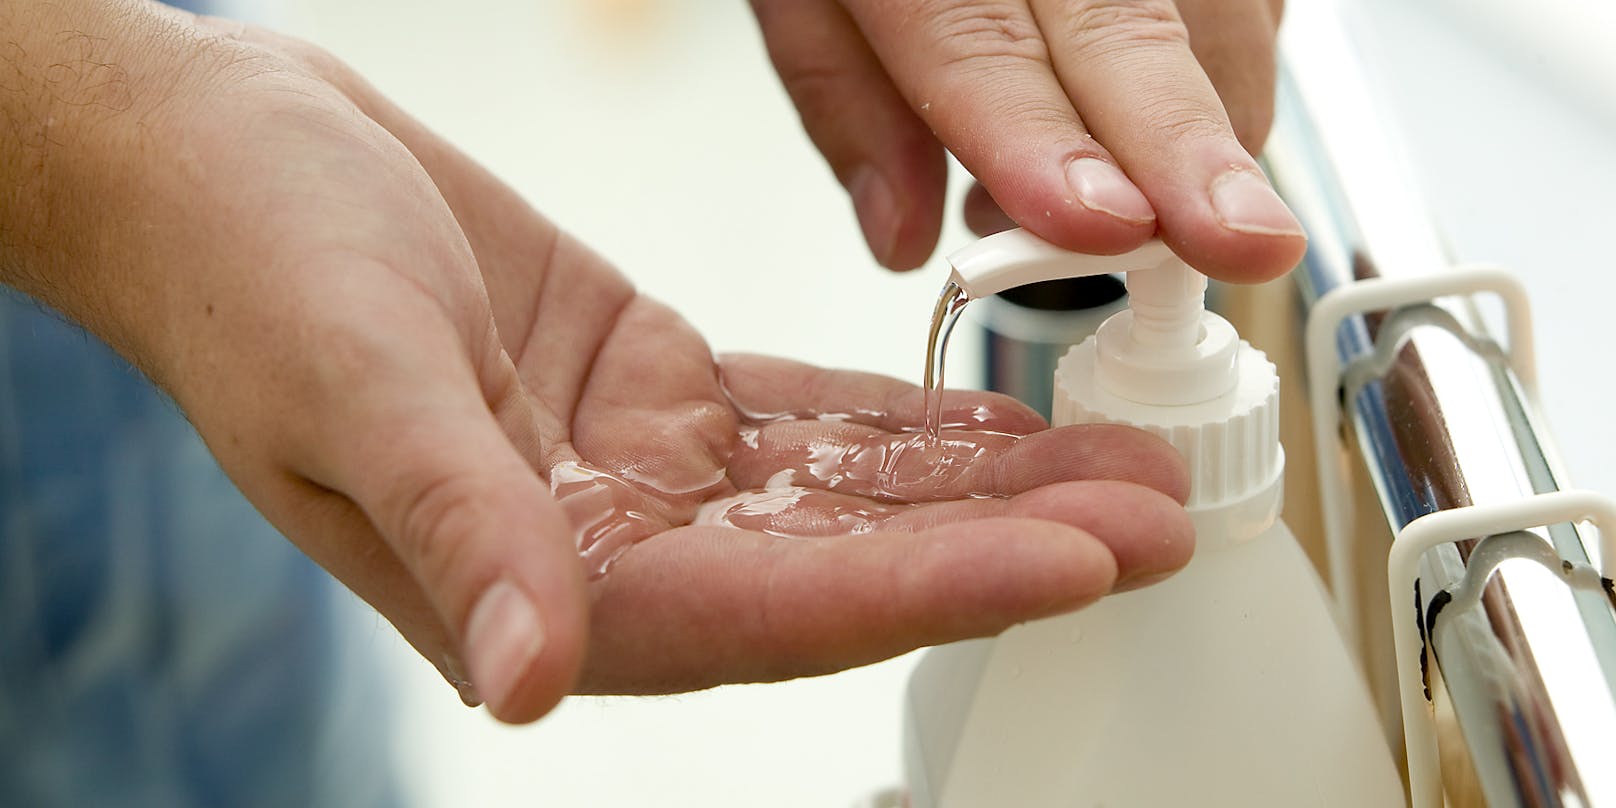 Ausgiebiges Händewaschen oder Verwendung eines Desinfektionsmittel könnte&nbsp;multidesinfektionsmittelresistente Bakterien "züchten".